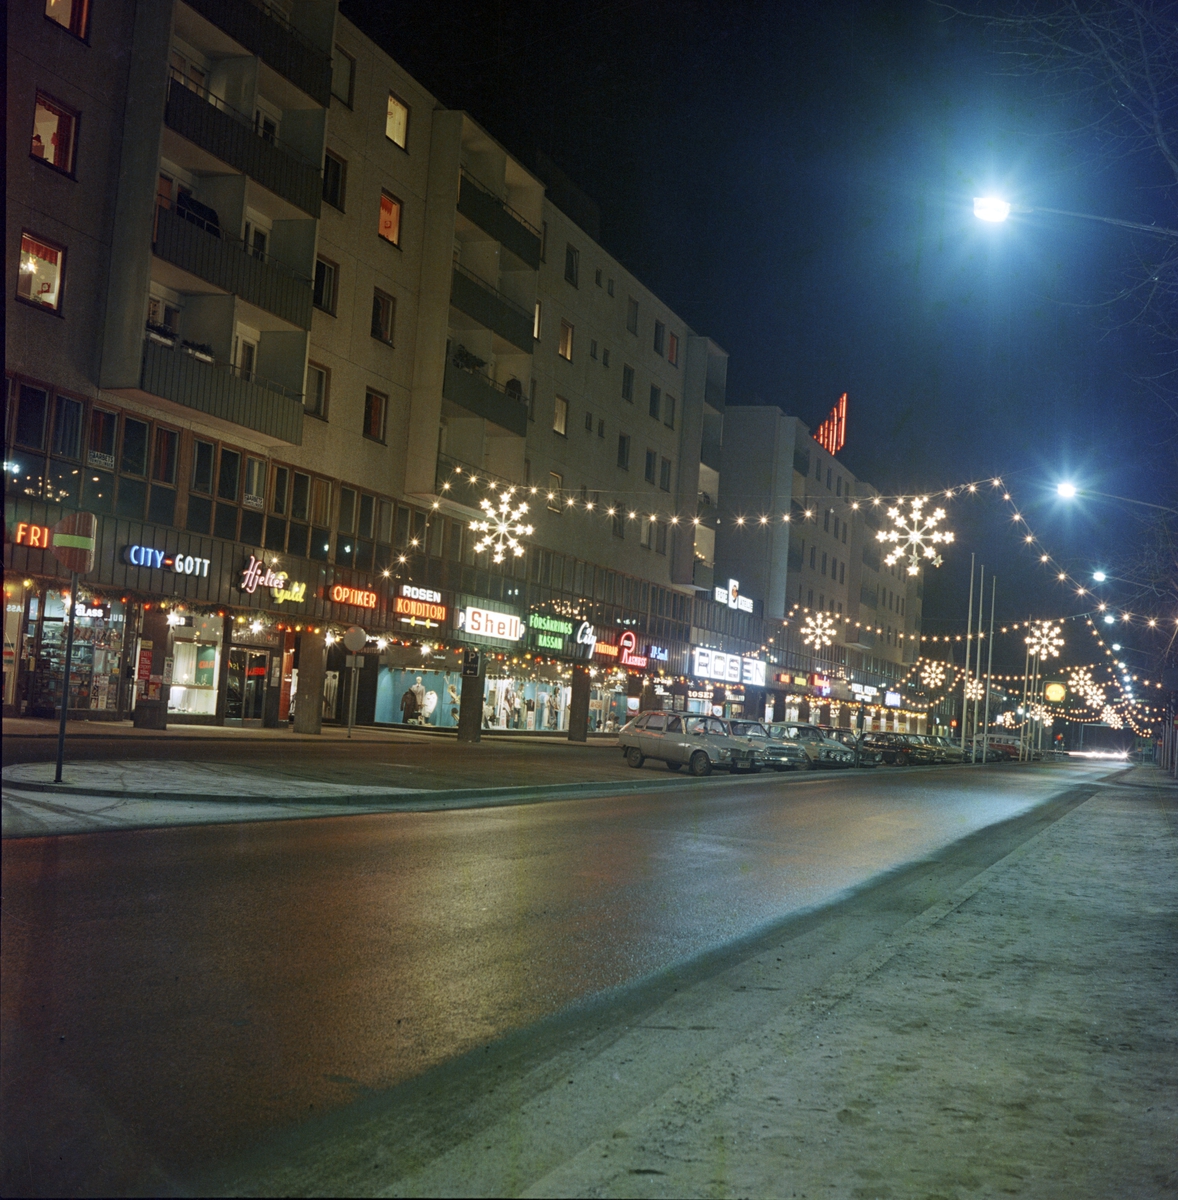 Rosenhuset med diverse butiker utmed Kungsgatan i Huskvarna där julbelysningen är uppsatt.